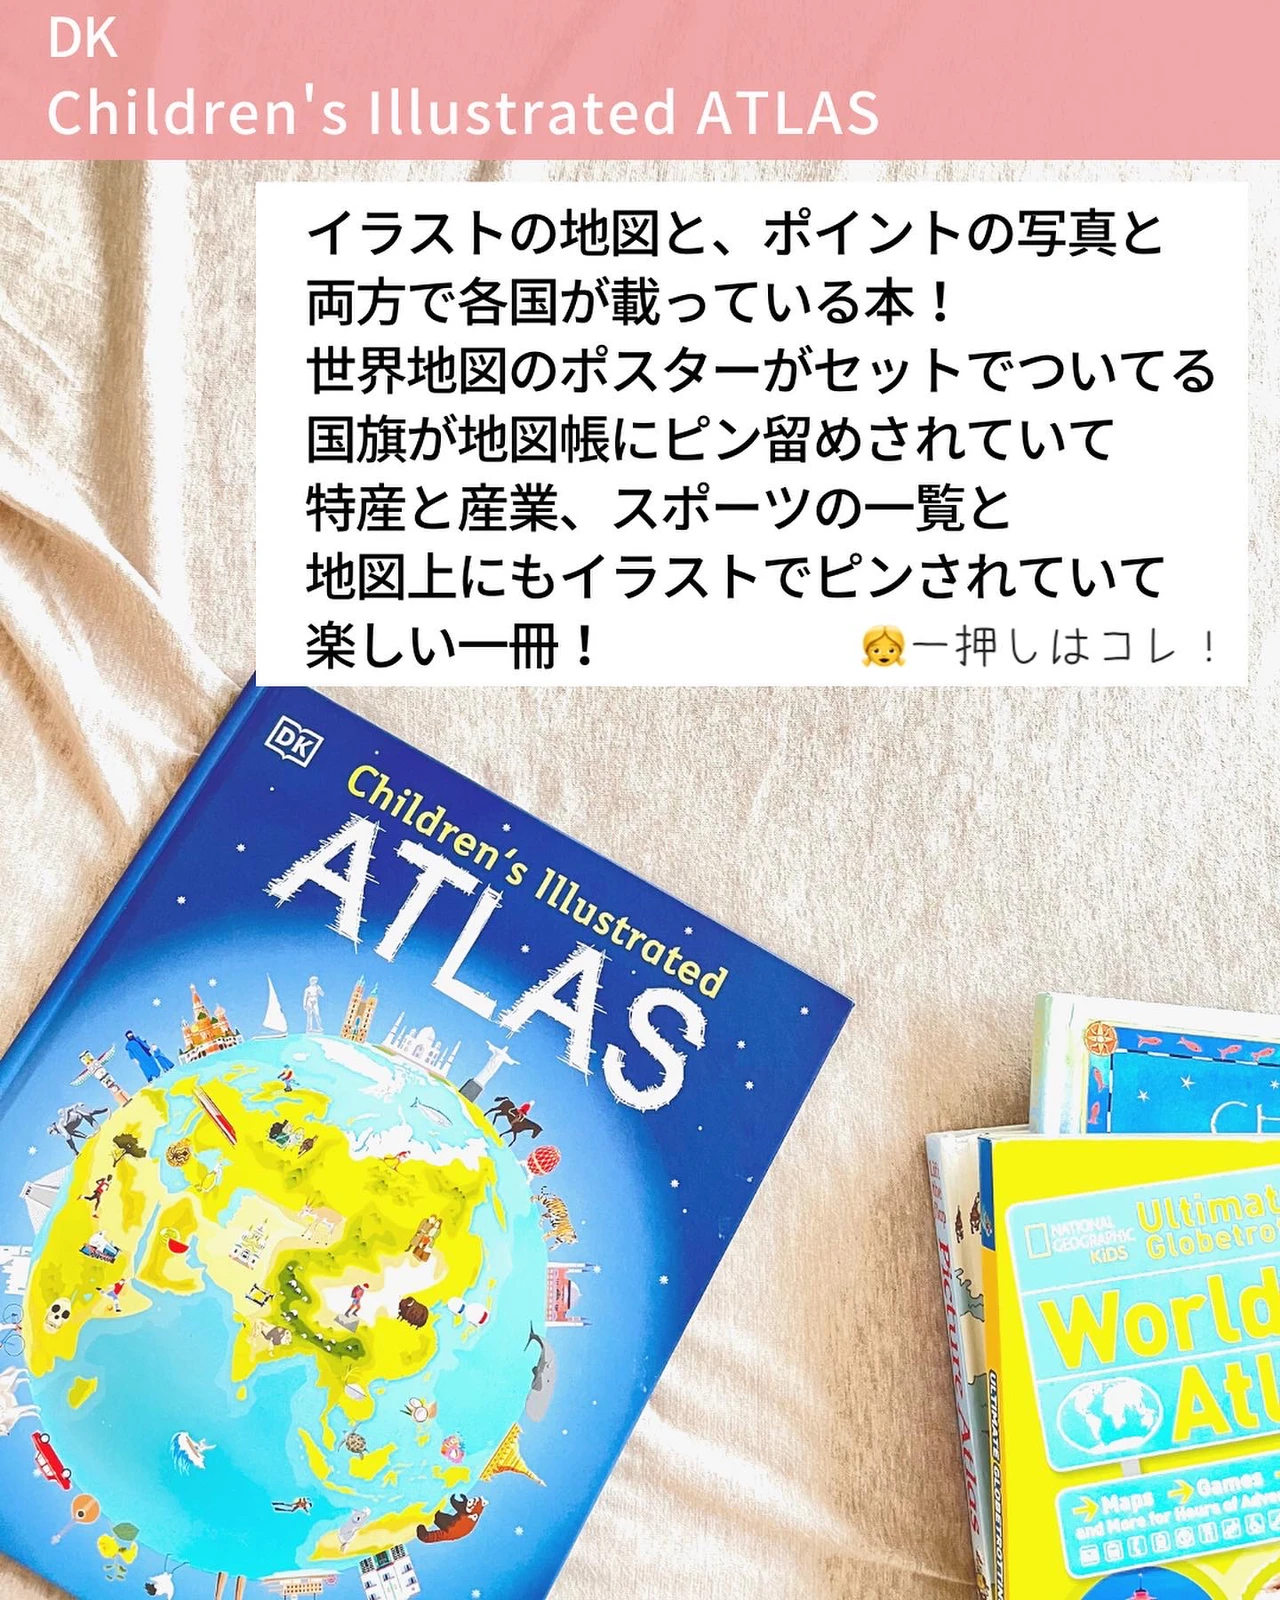 英語の地図帳 Atlasで世界地理を学ぶ Natsuko おうち英語ママが投稿したフォトブック Lemon8